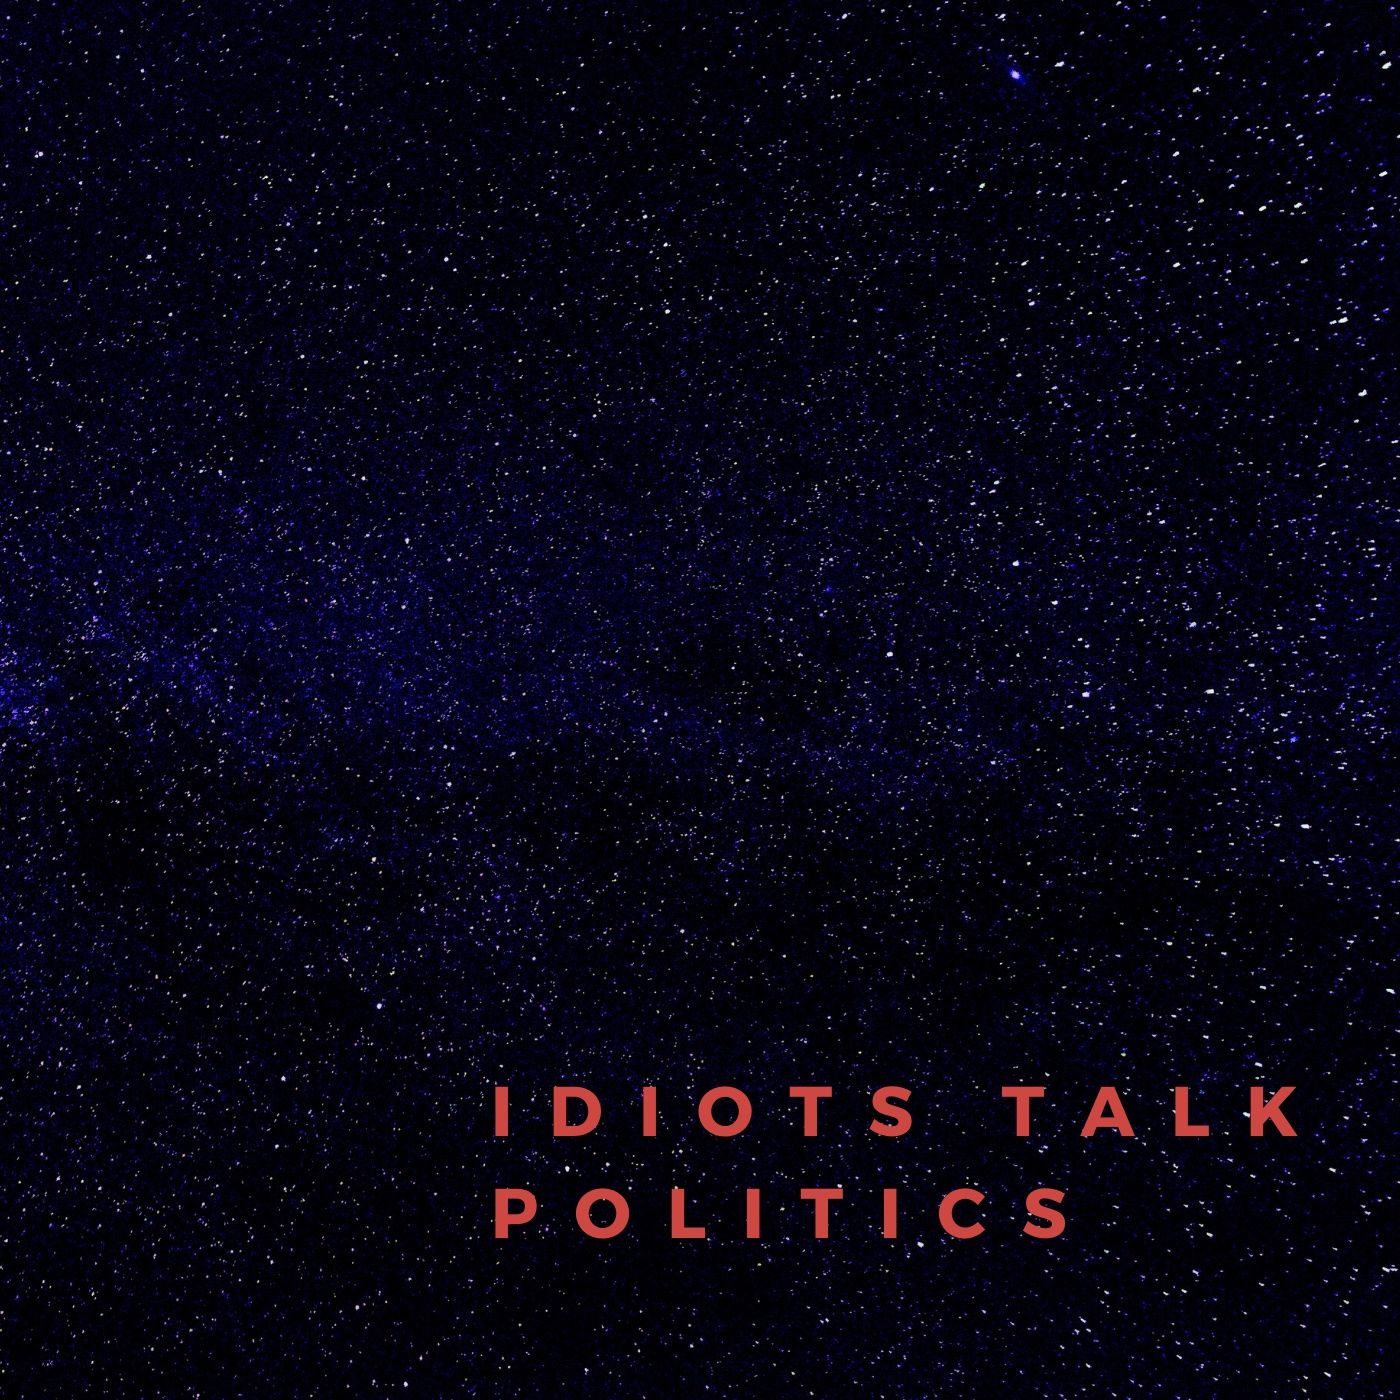 Episode 3 - Idiots Talk Politics